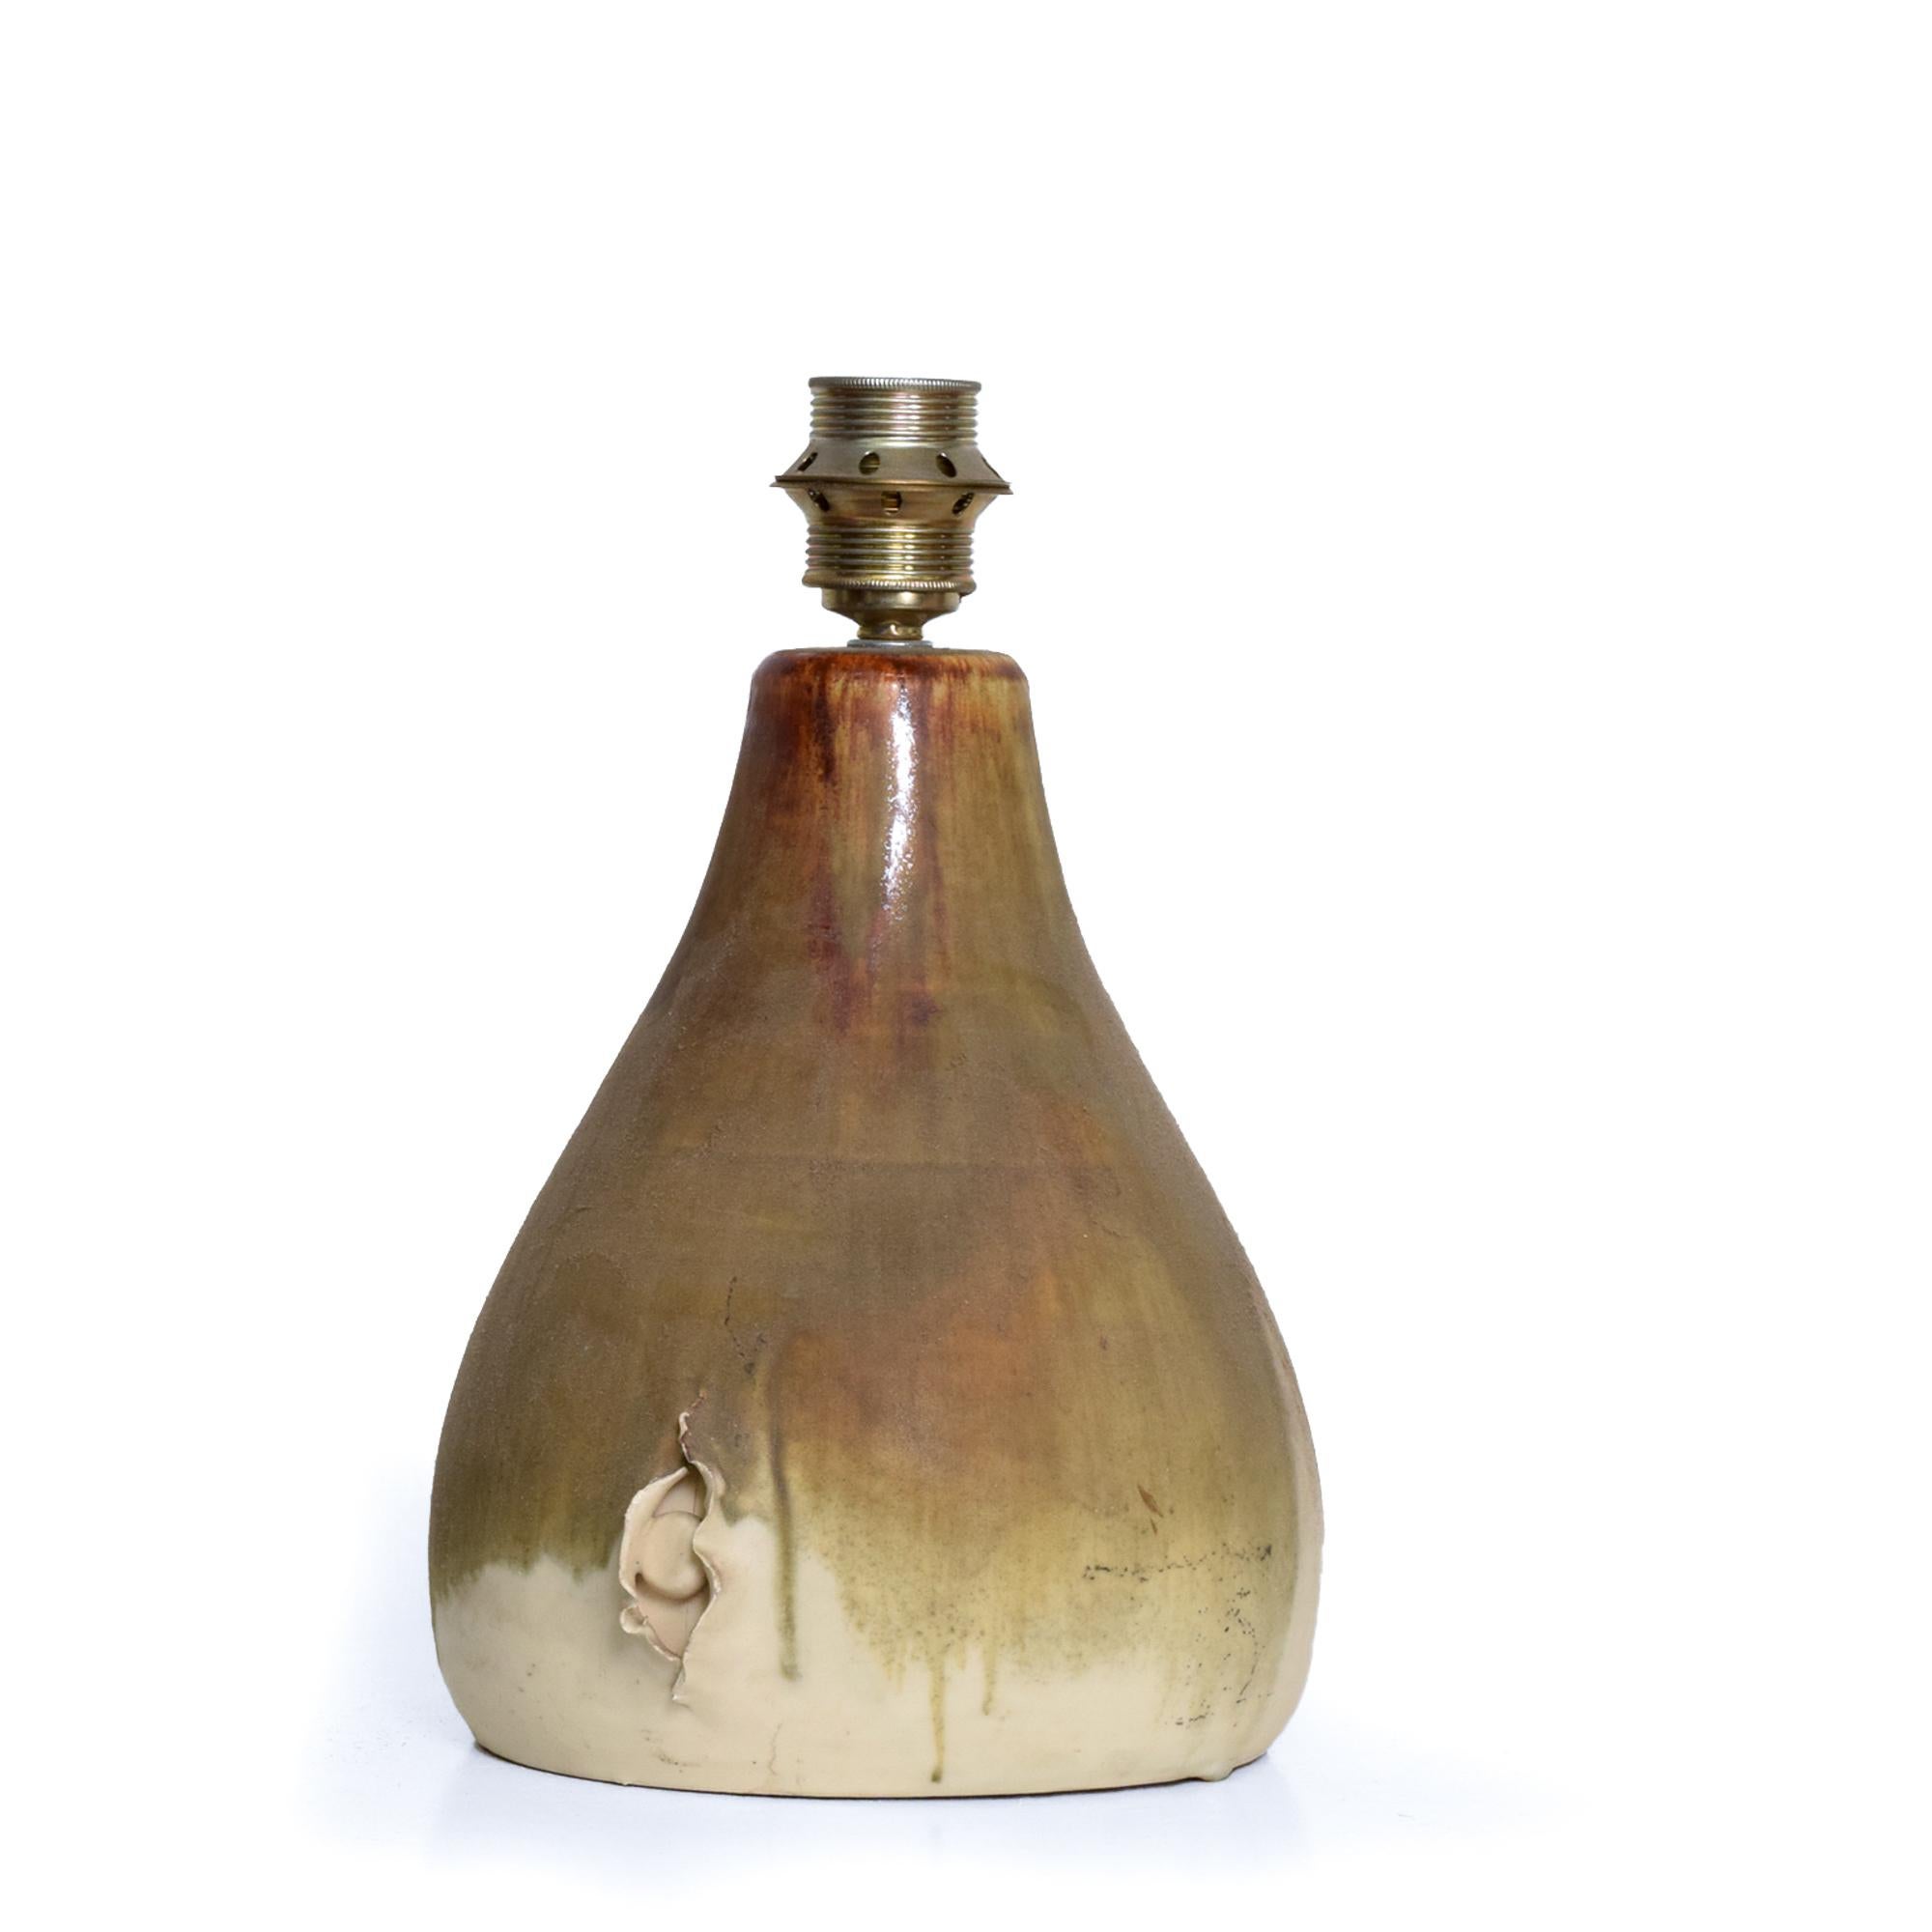 AMBIANIC präsentiert
Skandinavische Moderne Keramik Fette Lava Tischlampe Keramik Tropfglasur aus Dänemark 1960s
Stil des europäischen Raymor
Die Lampe hat eine europäische Fassung, die sich an den Lampenschirm anpasst.
Abmessungen: 13 H (Sockel) x